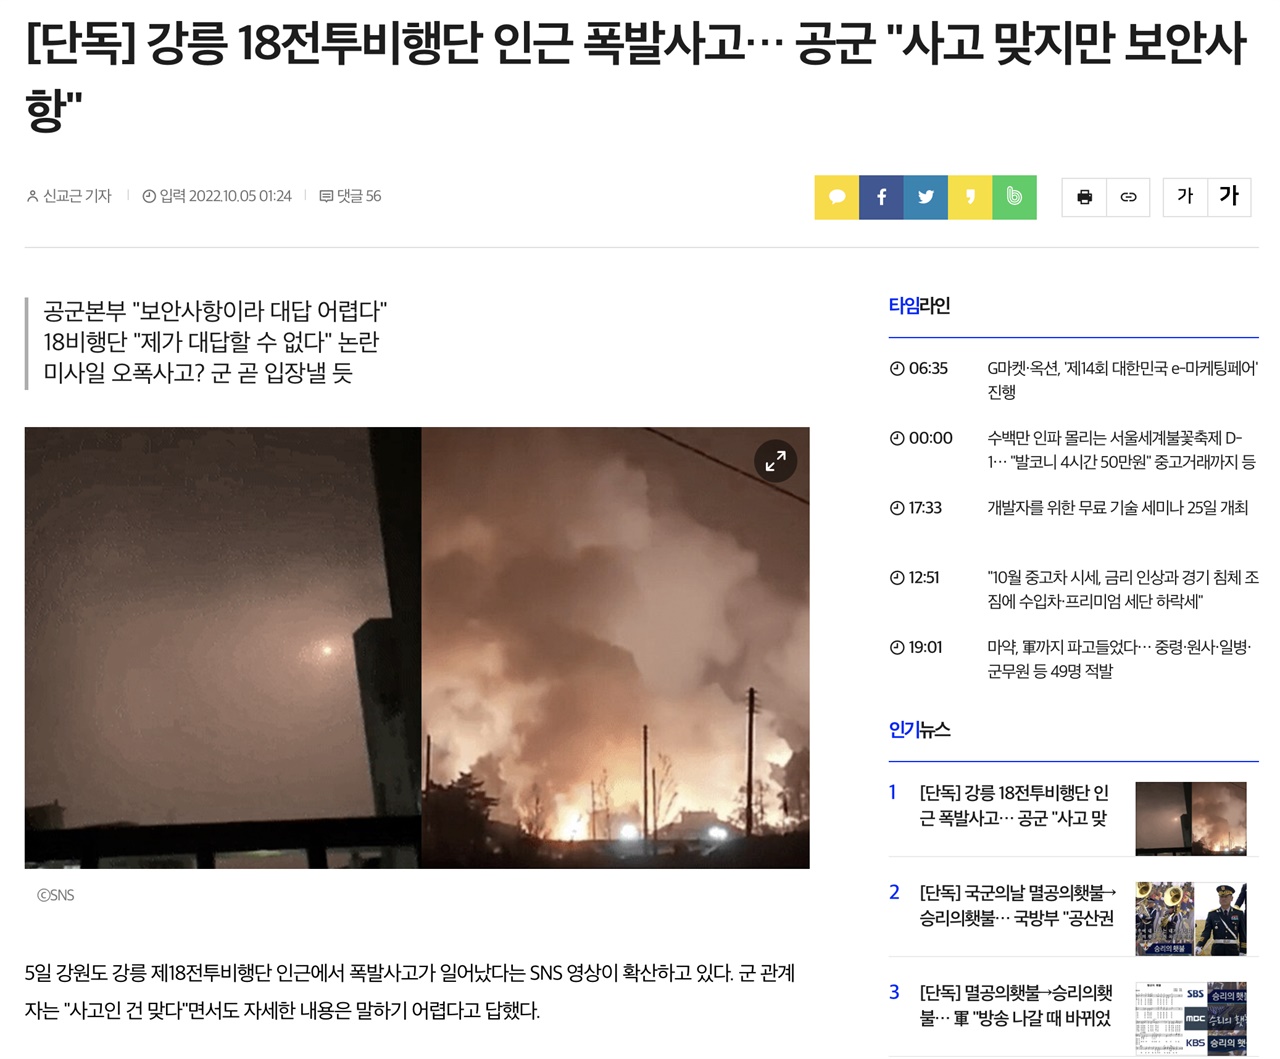 현무-2 미사일 낙탄 화재 사건을 최초 보도한 곳은 인터넷 언론사 <커머스갤러리>다.